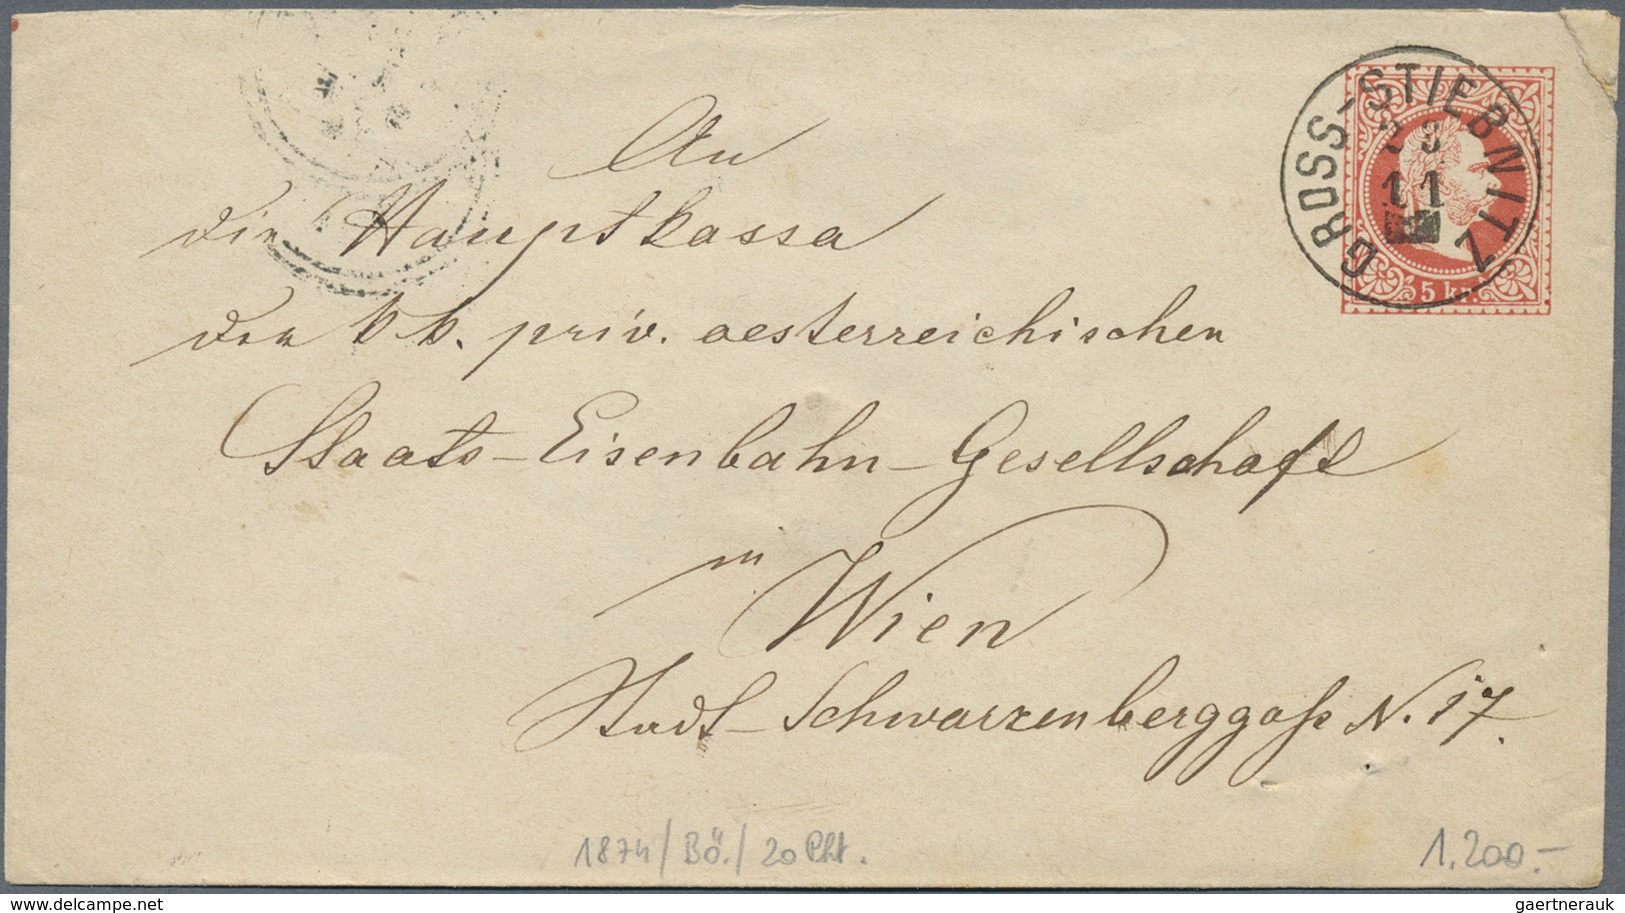 GA/Br Österreich - Stempel: 1869/1886, Stempelsammlung in außergewöhnlicher Qualität. Ca. 150 Belege, meis